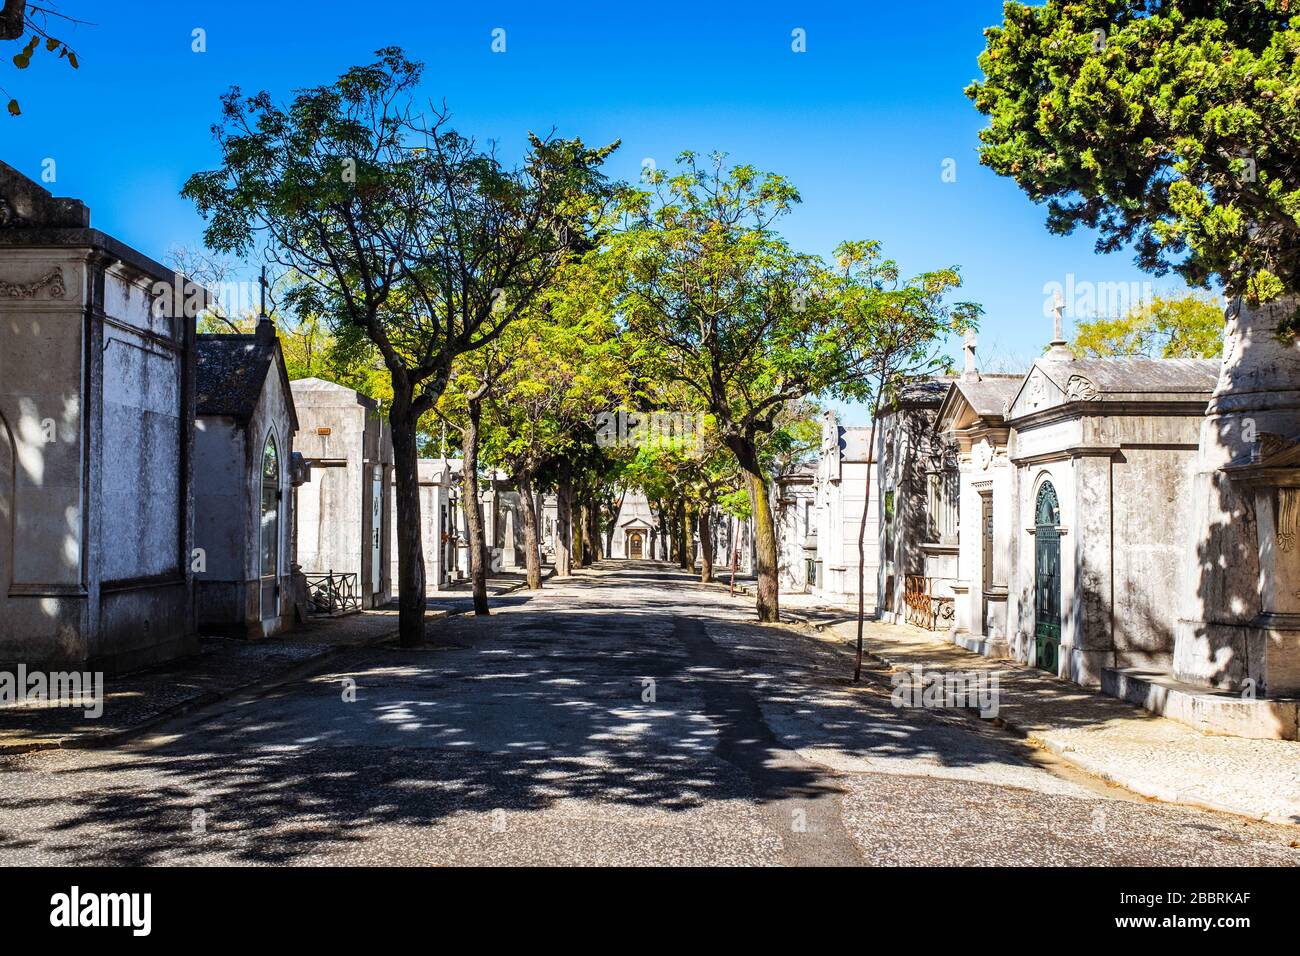 Alleyway between mausoleums in Cemitério do Alto de São João. Stock Photo